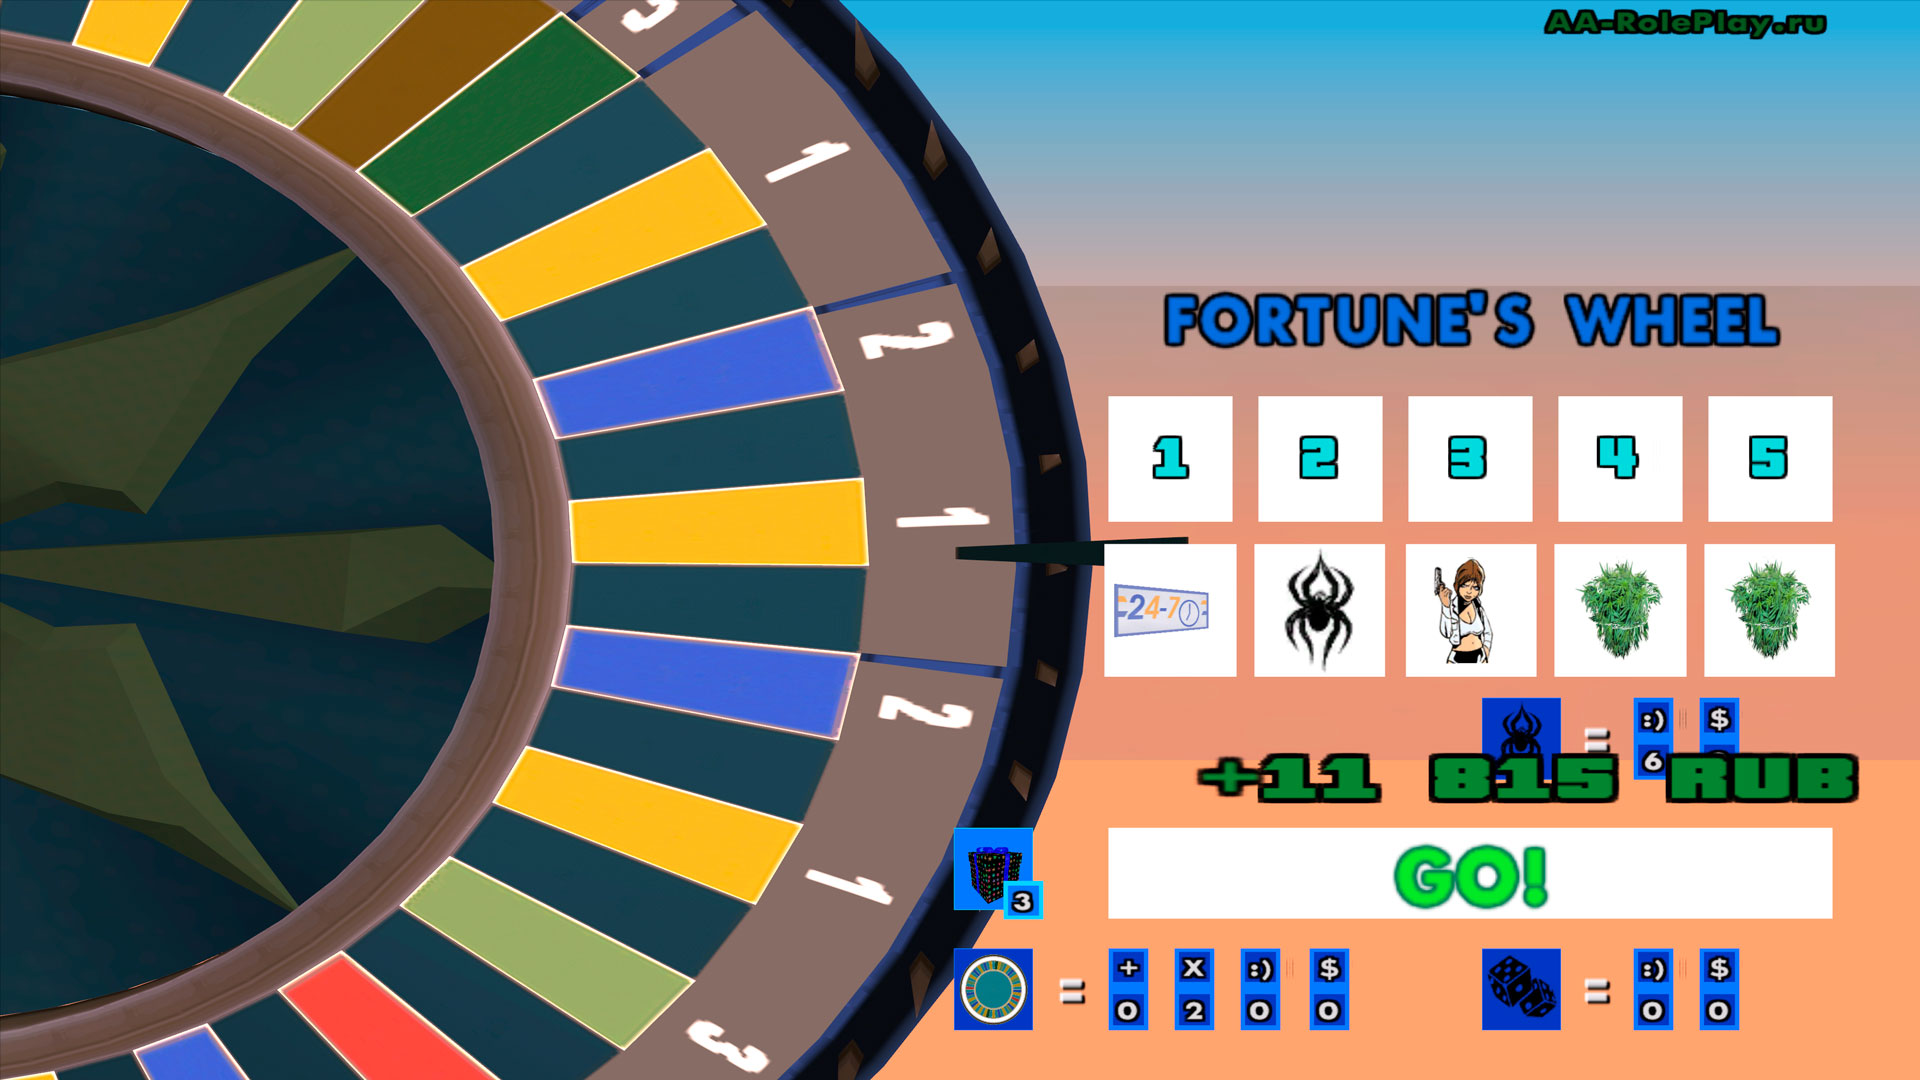 Чтобы начать игру в игре - "Колесо Фортуны" - введите команду /fortune. Чтобы запустить рулетку в сампе - нажмите на самую большую кнопку "GO!". Пусть Вам всегда везёт! 